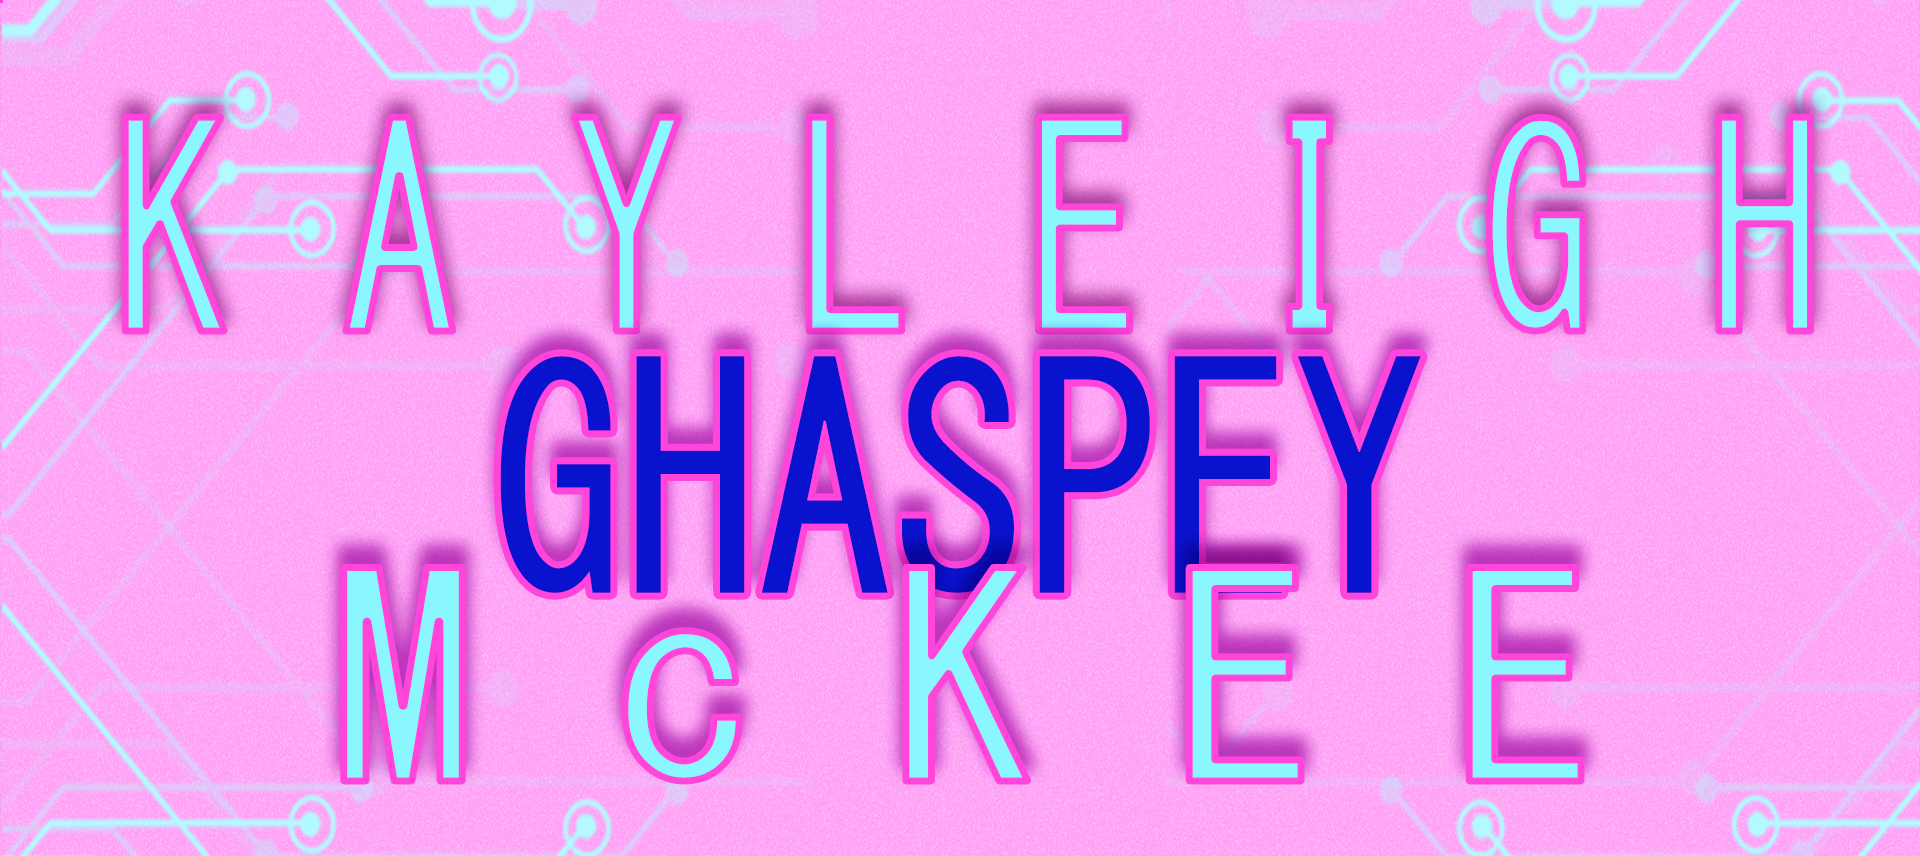 Kayleigh Ghaspey McKee.png